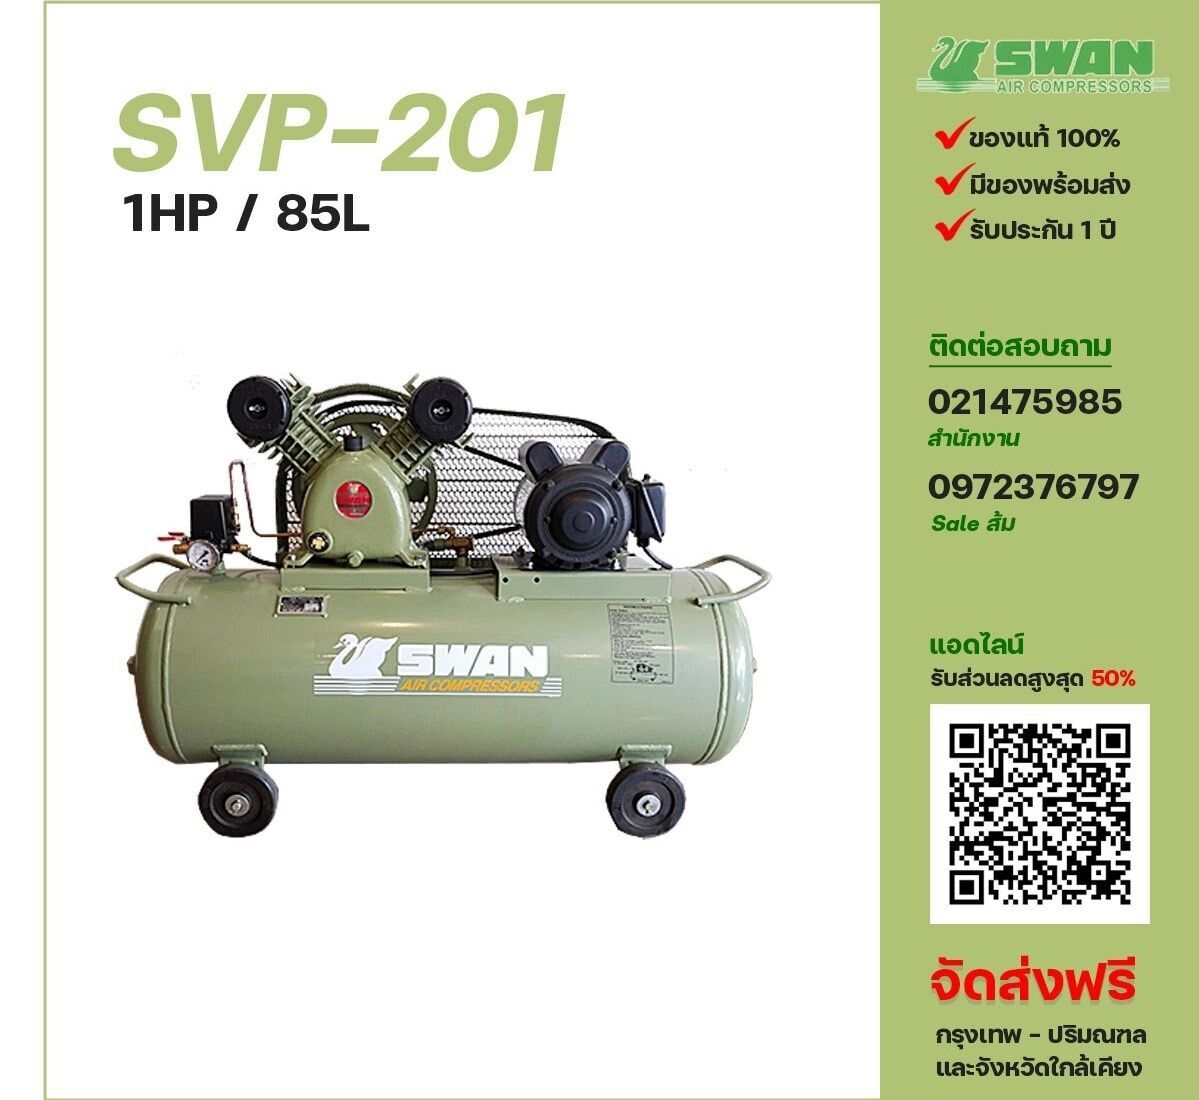 ปั๊มลมสวอน SWAN รุ่น SVP-201
ขนาด 1 แรงม้า / 85 ลิตร